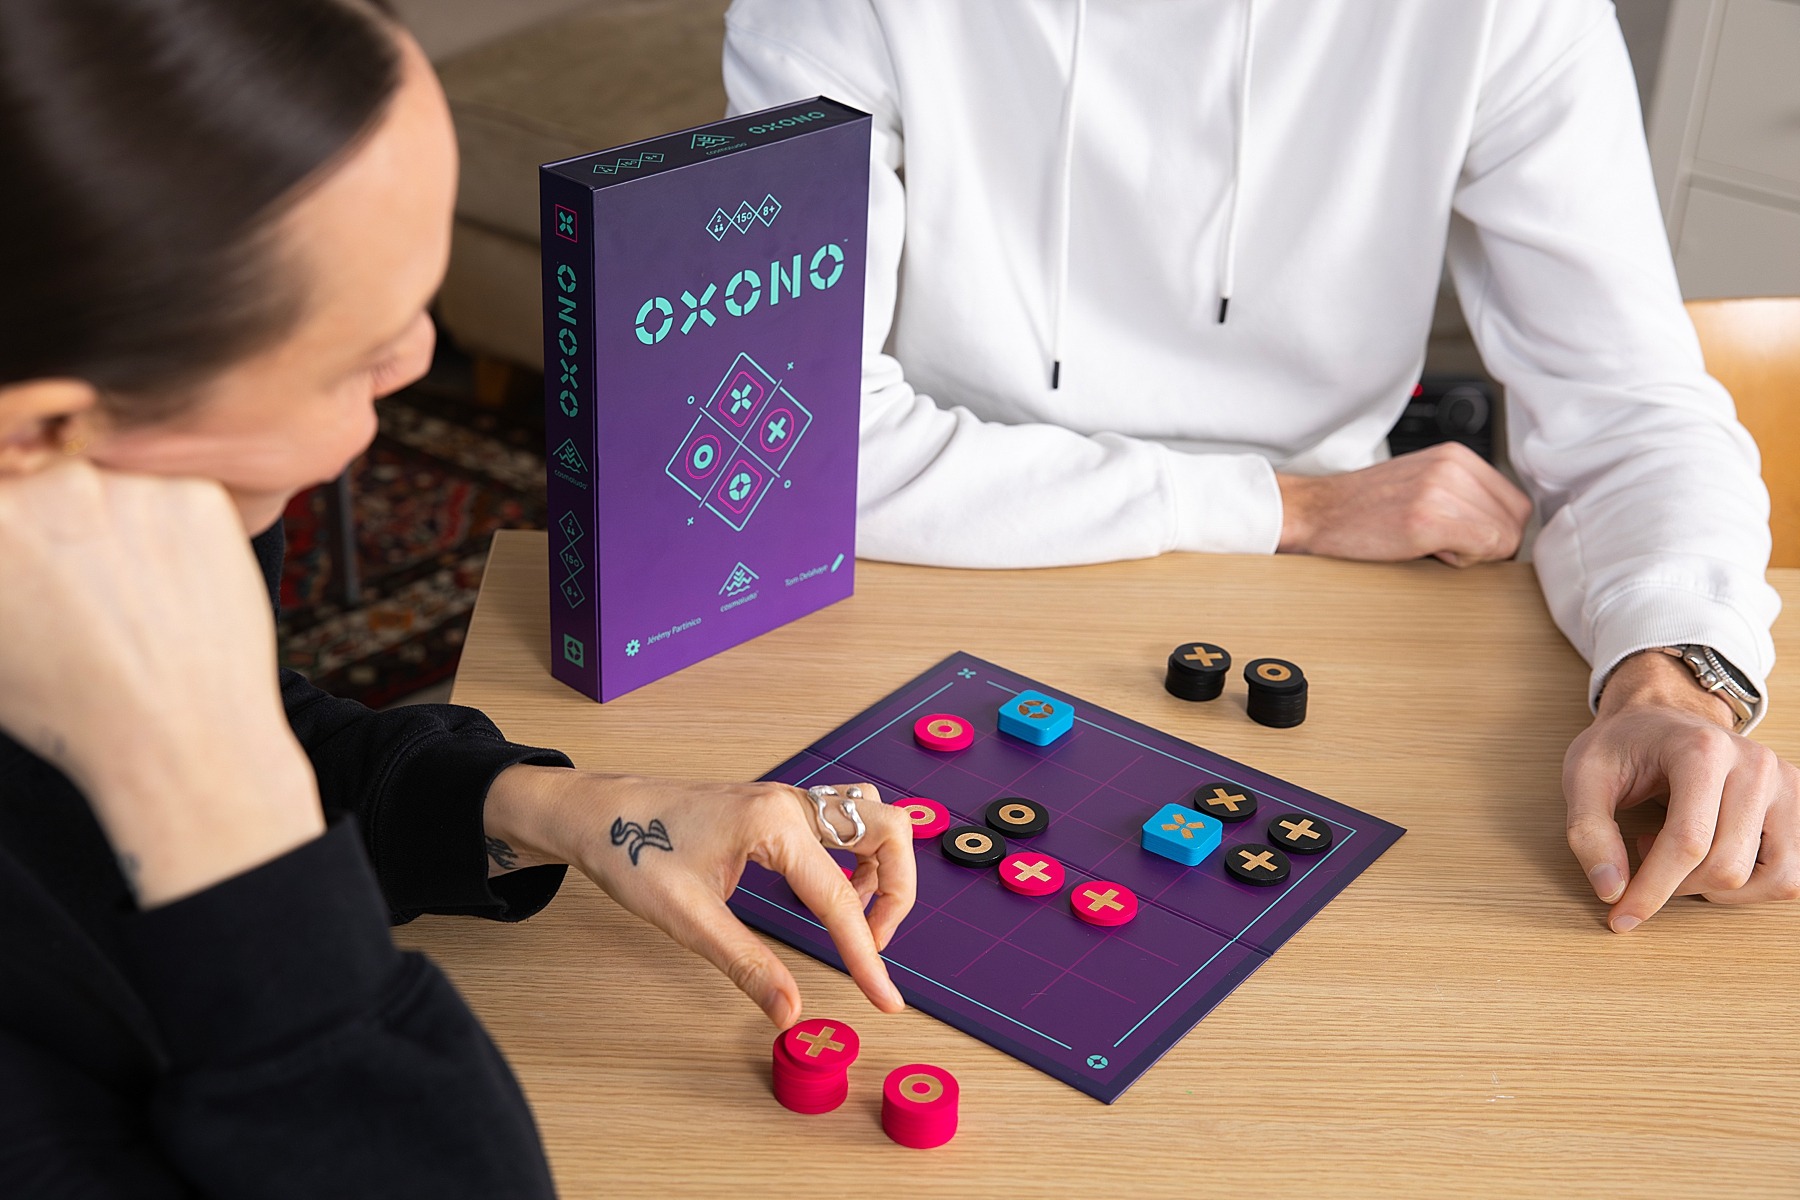 Oxono cosmoludo jeu de société boardgame